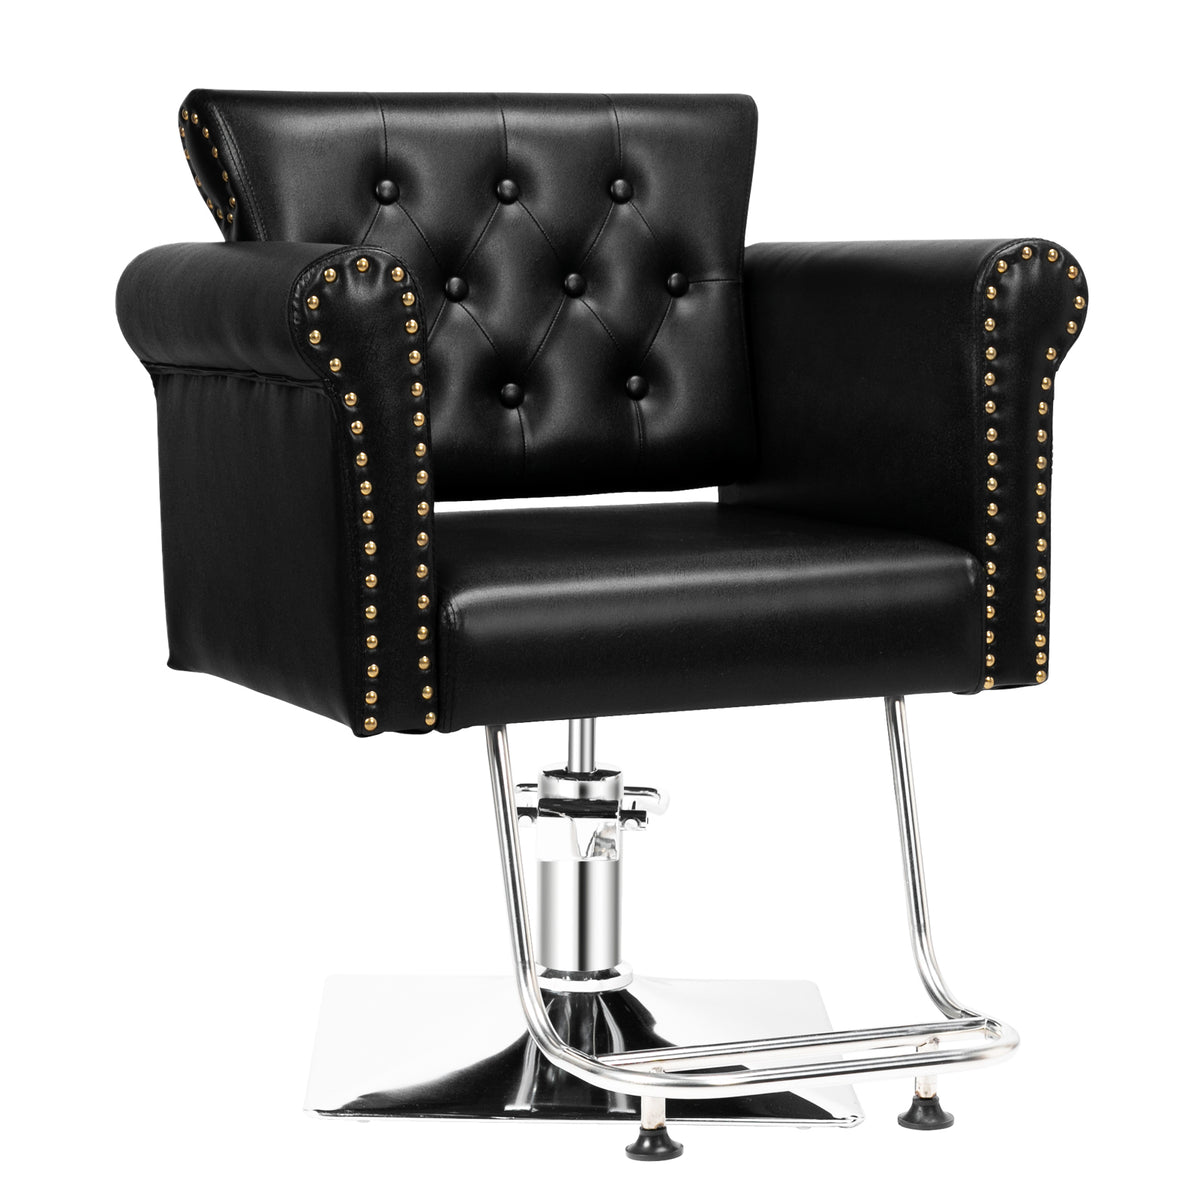 OmySalon SC02 Hydraulic 360-Degree Swivel Hair Stylist Salon Chair